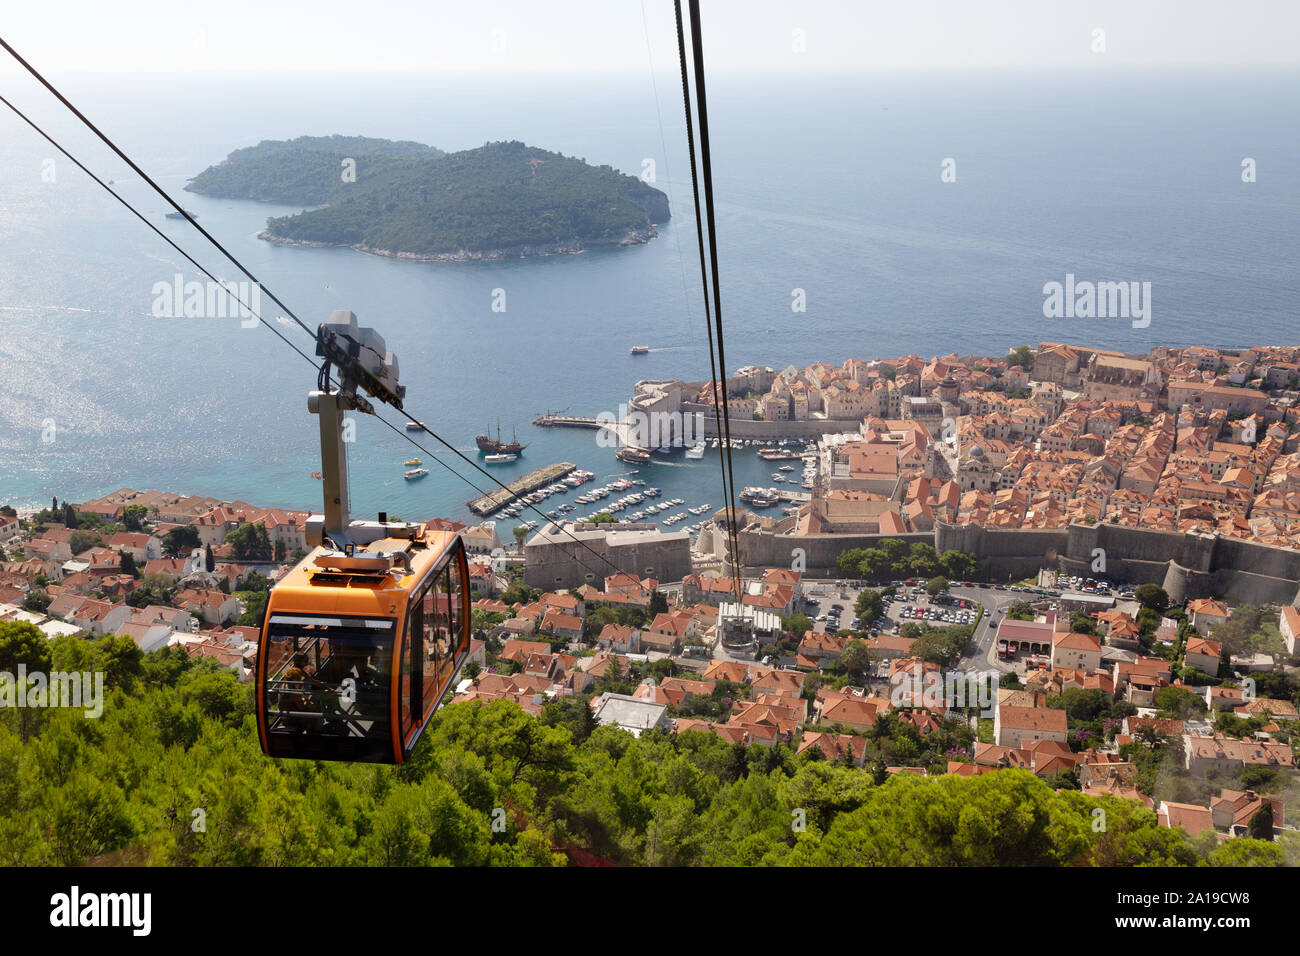 Le téléphérique de Dubrovnik - à partir de la vue panoramique sur la vieille ville de Dubrovnik, la côte dalmate et l'île de Lokrum, Mt Srd, Dubrovnik Croatie Banque D'Images